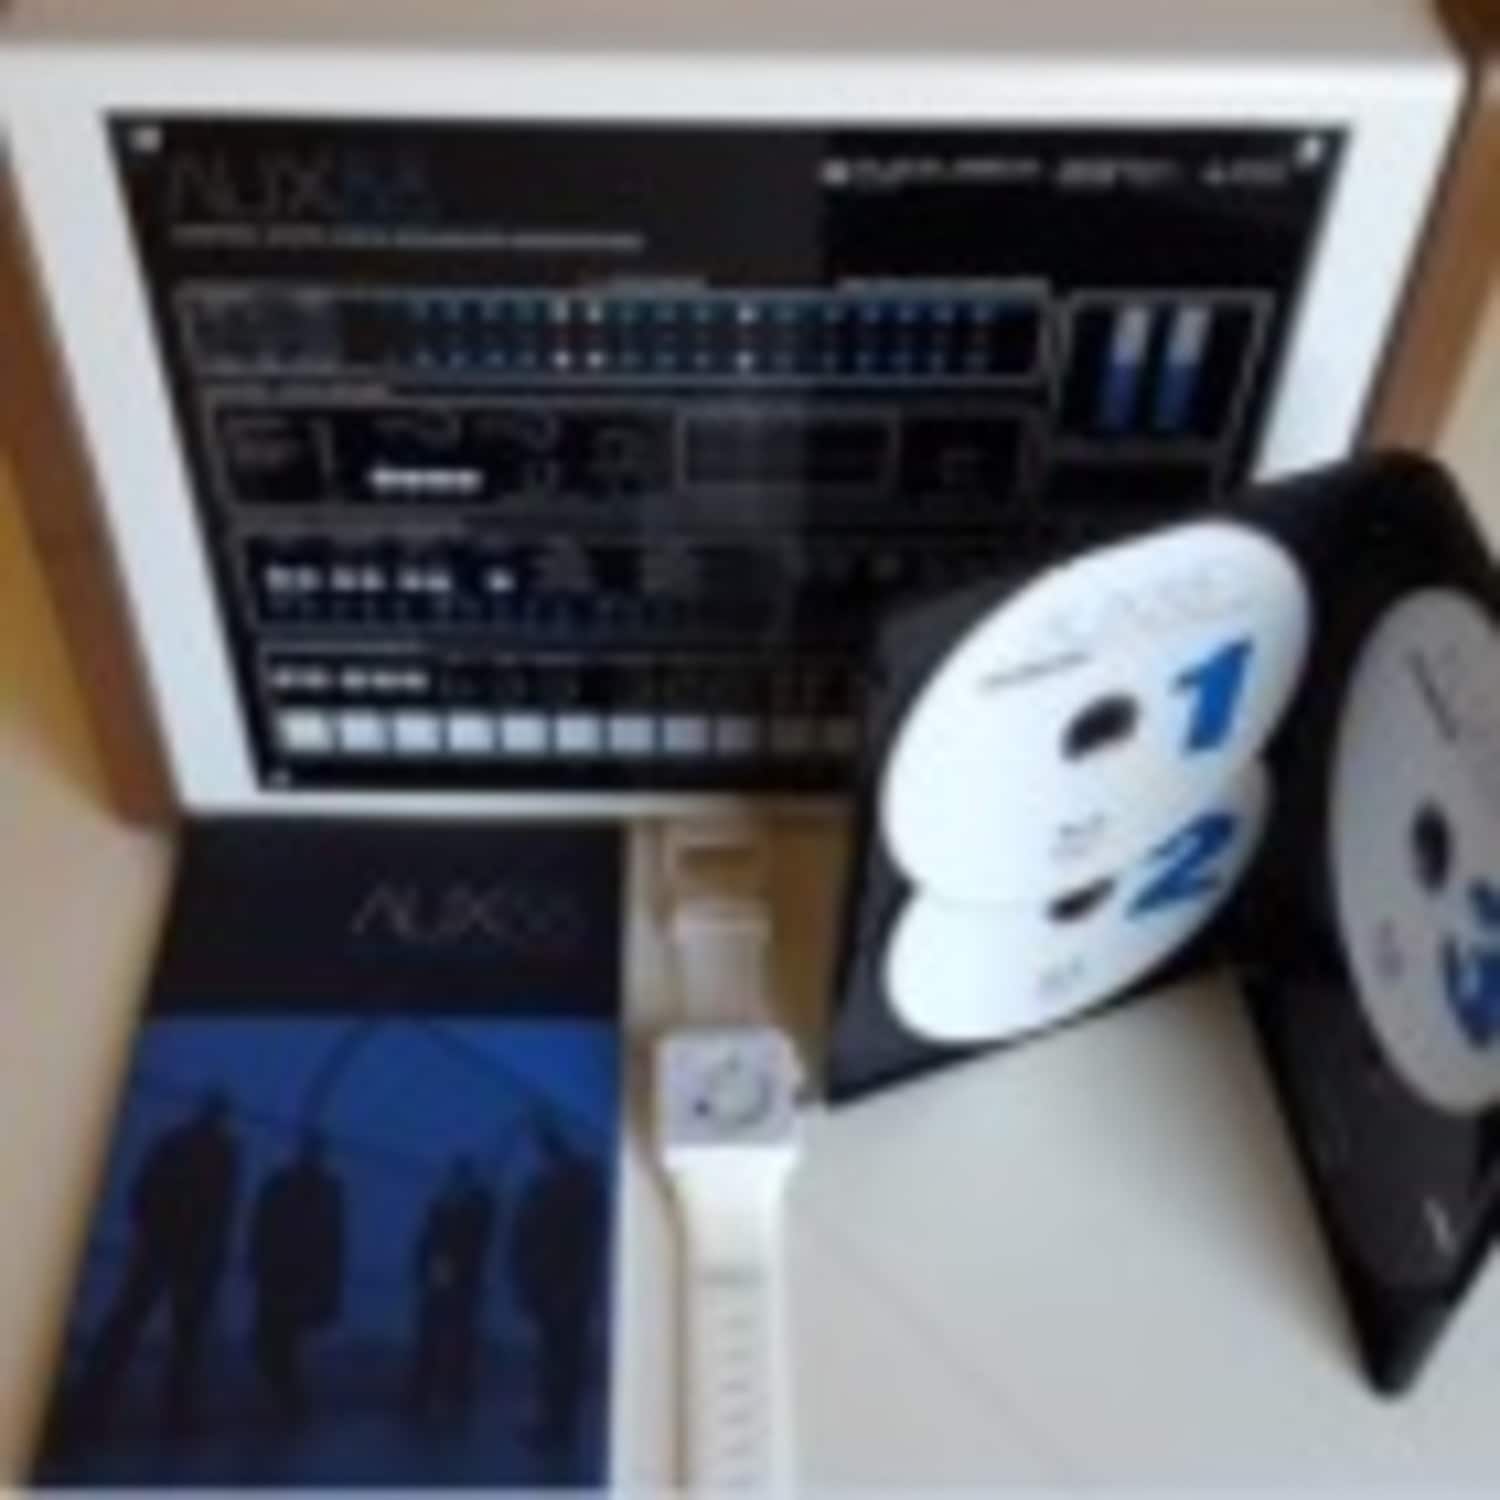 AUX88 - AUXBOX COLLECTION BOX 